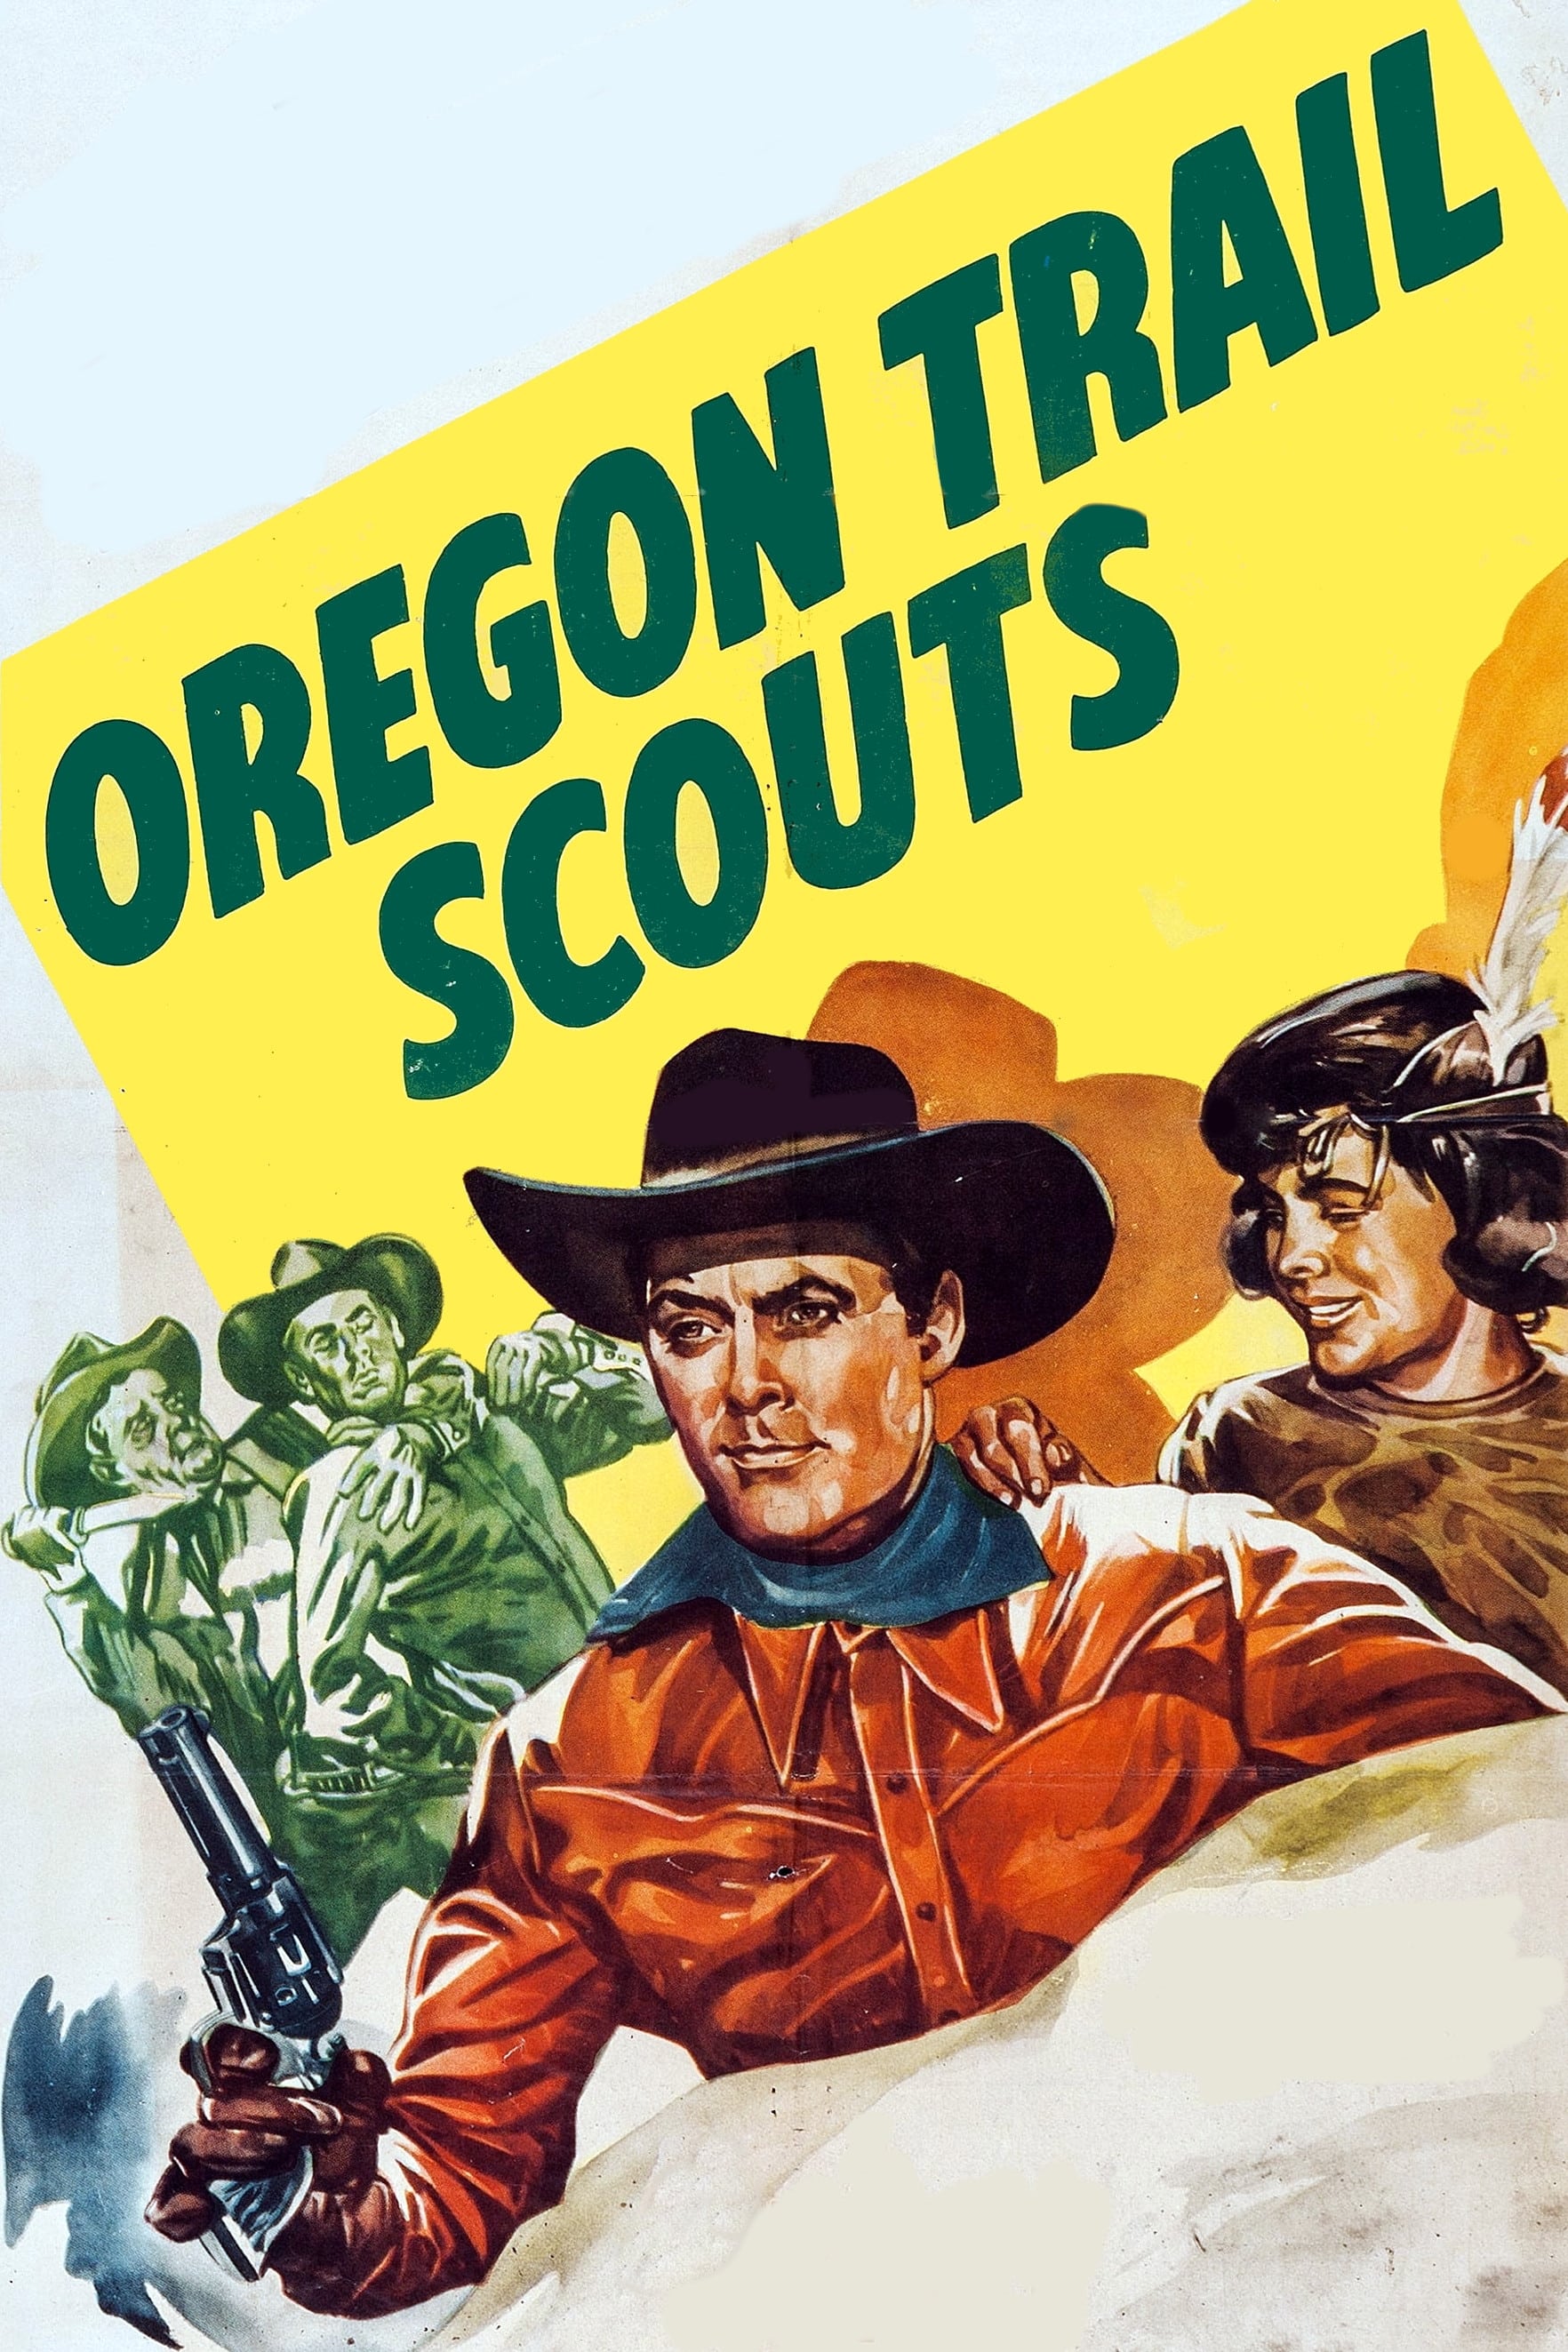 Oregon Trail Scouts